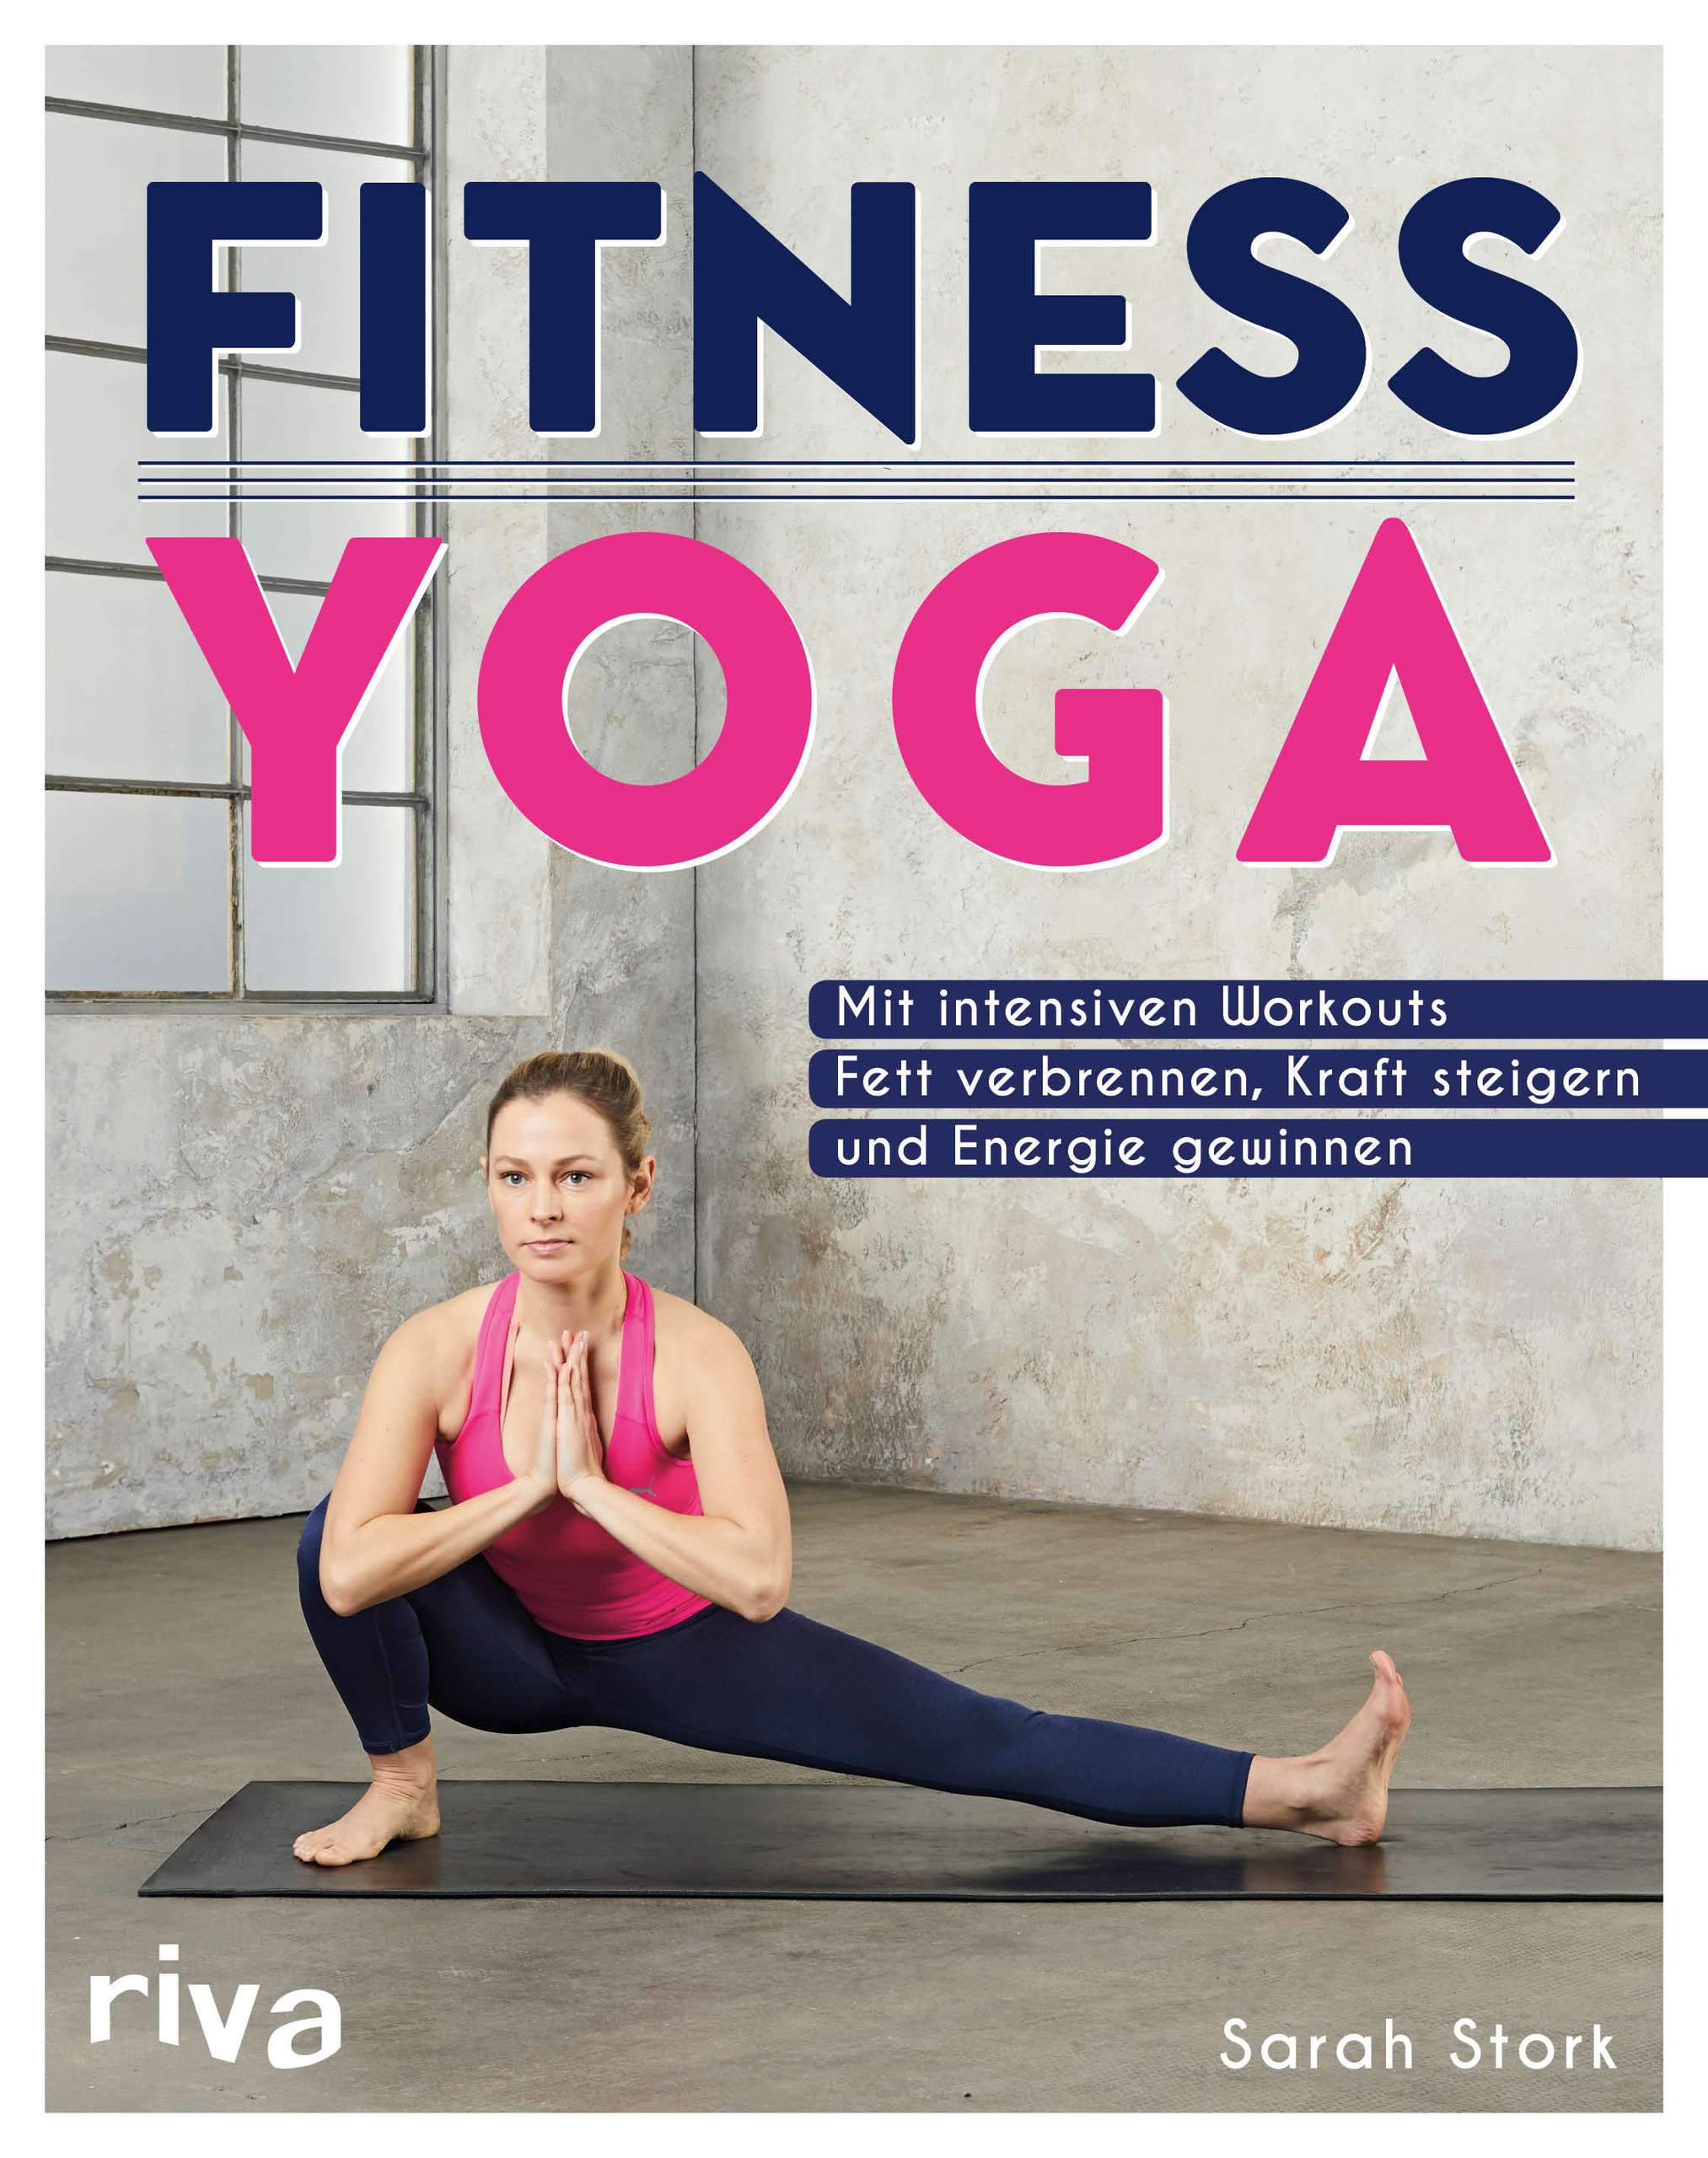 "Fitness Yoga" von Sarah Stork © riva Yogannetteblog.de